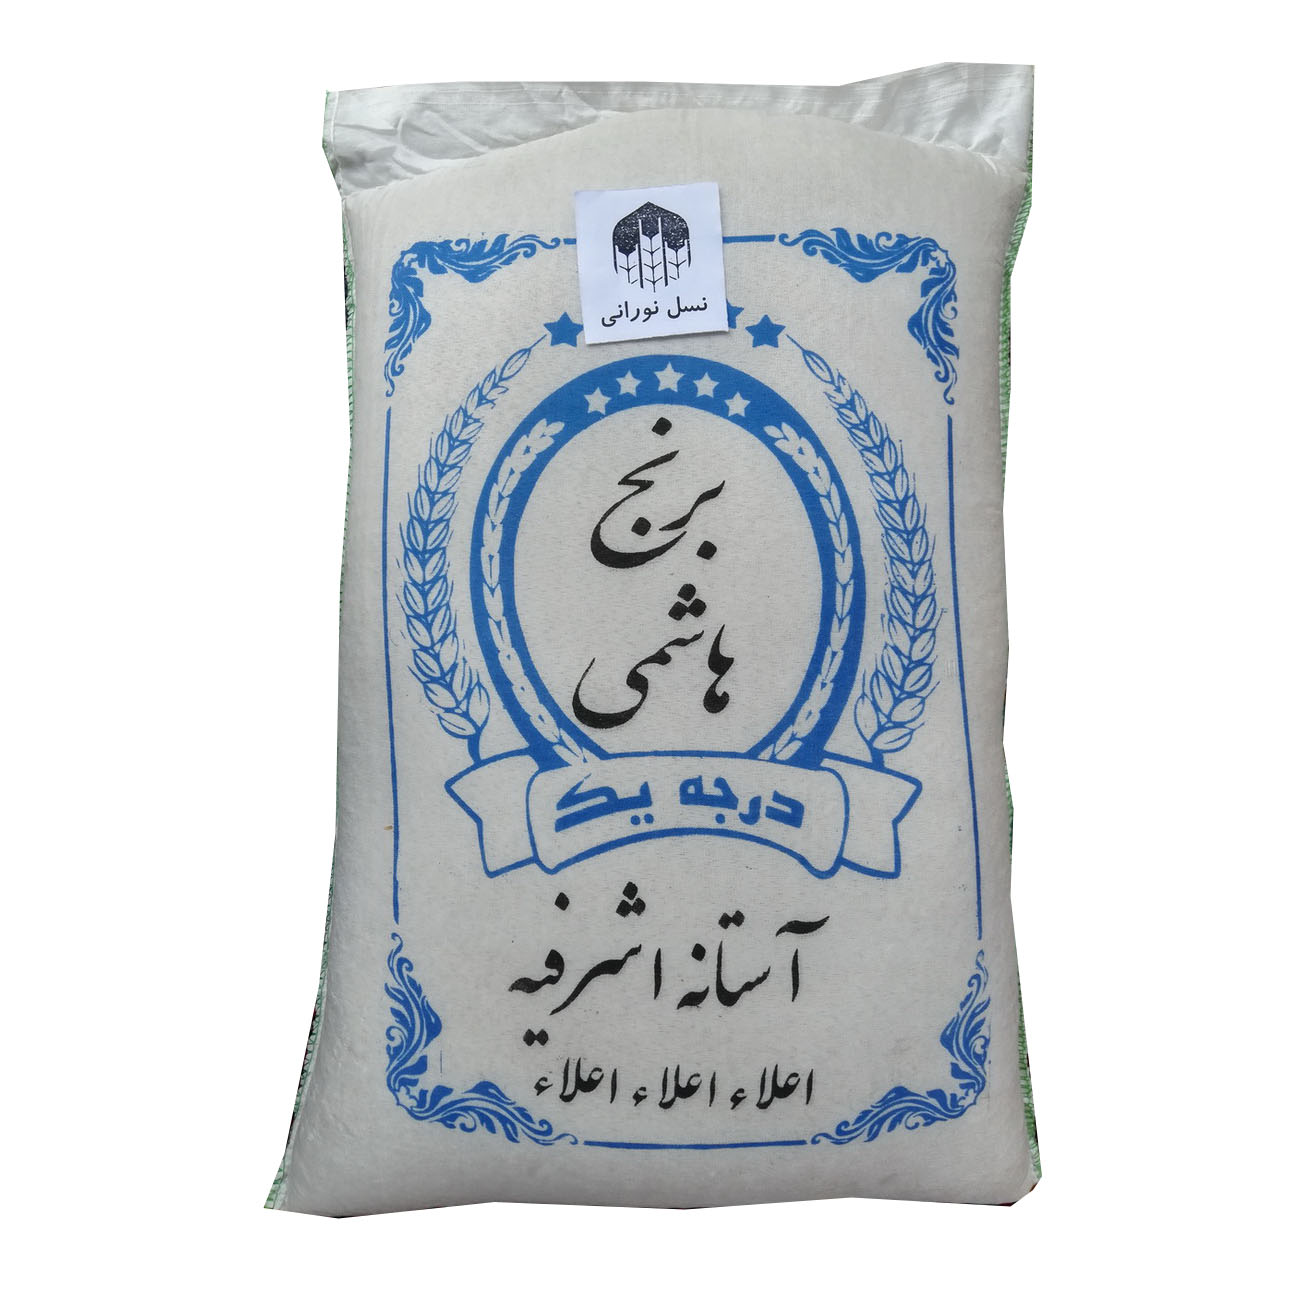 نکته خرید - قیمت روز برنج ایرانی آستانه اشرفیه - 10 کیلوگرم خرید